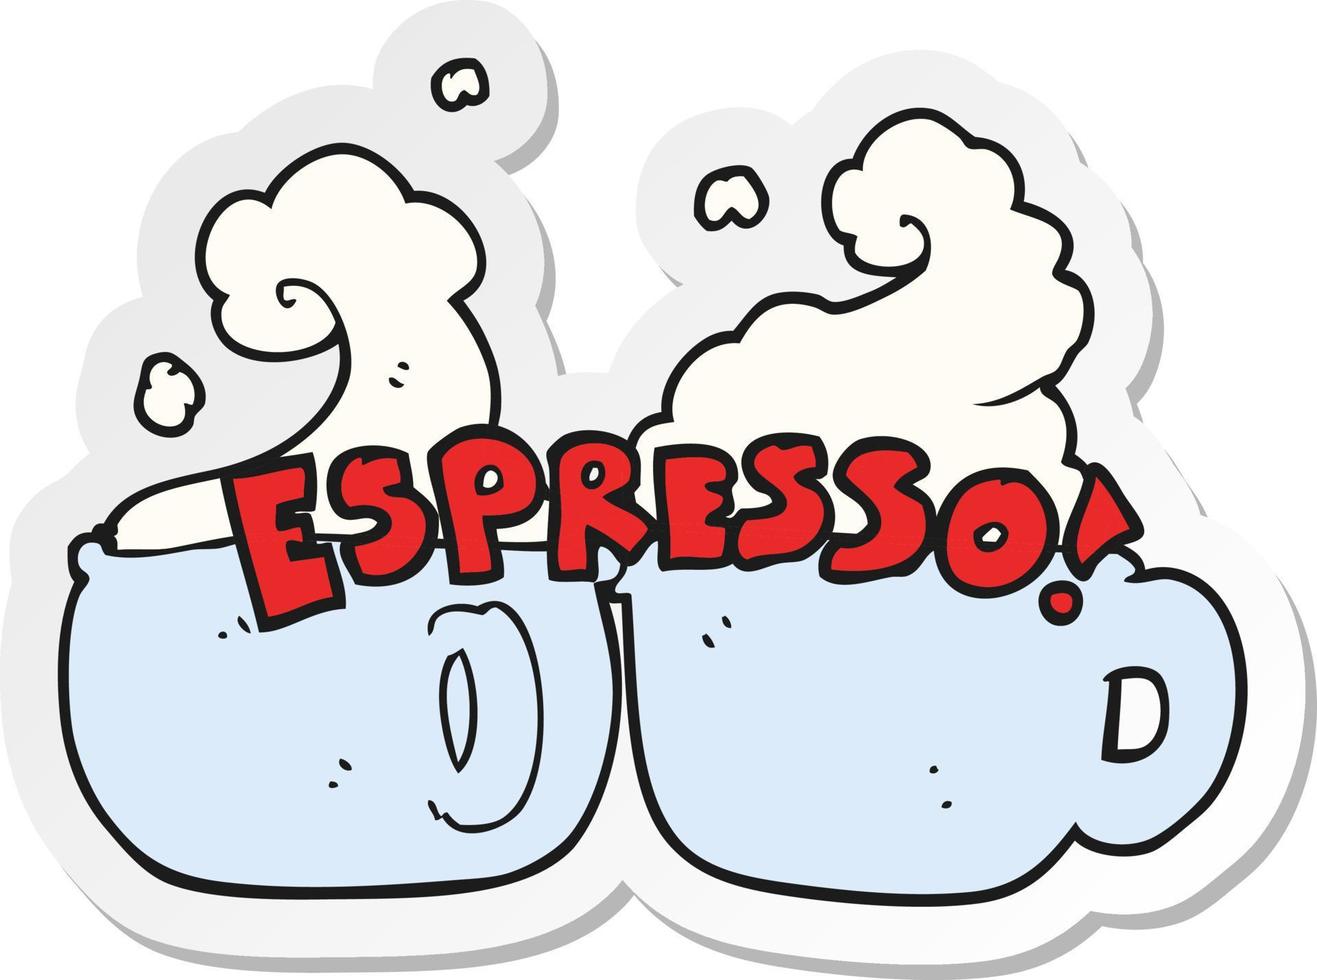 klistermärke av en tecknad serie espresso vektor